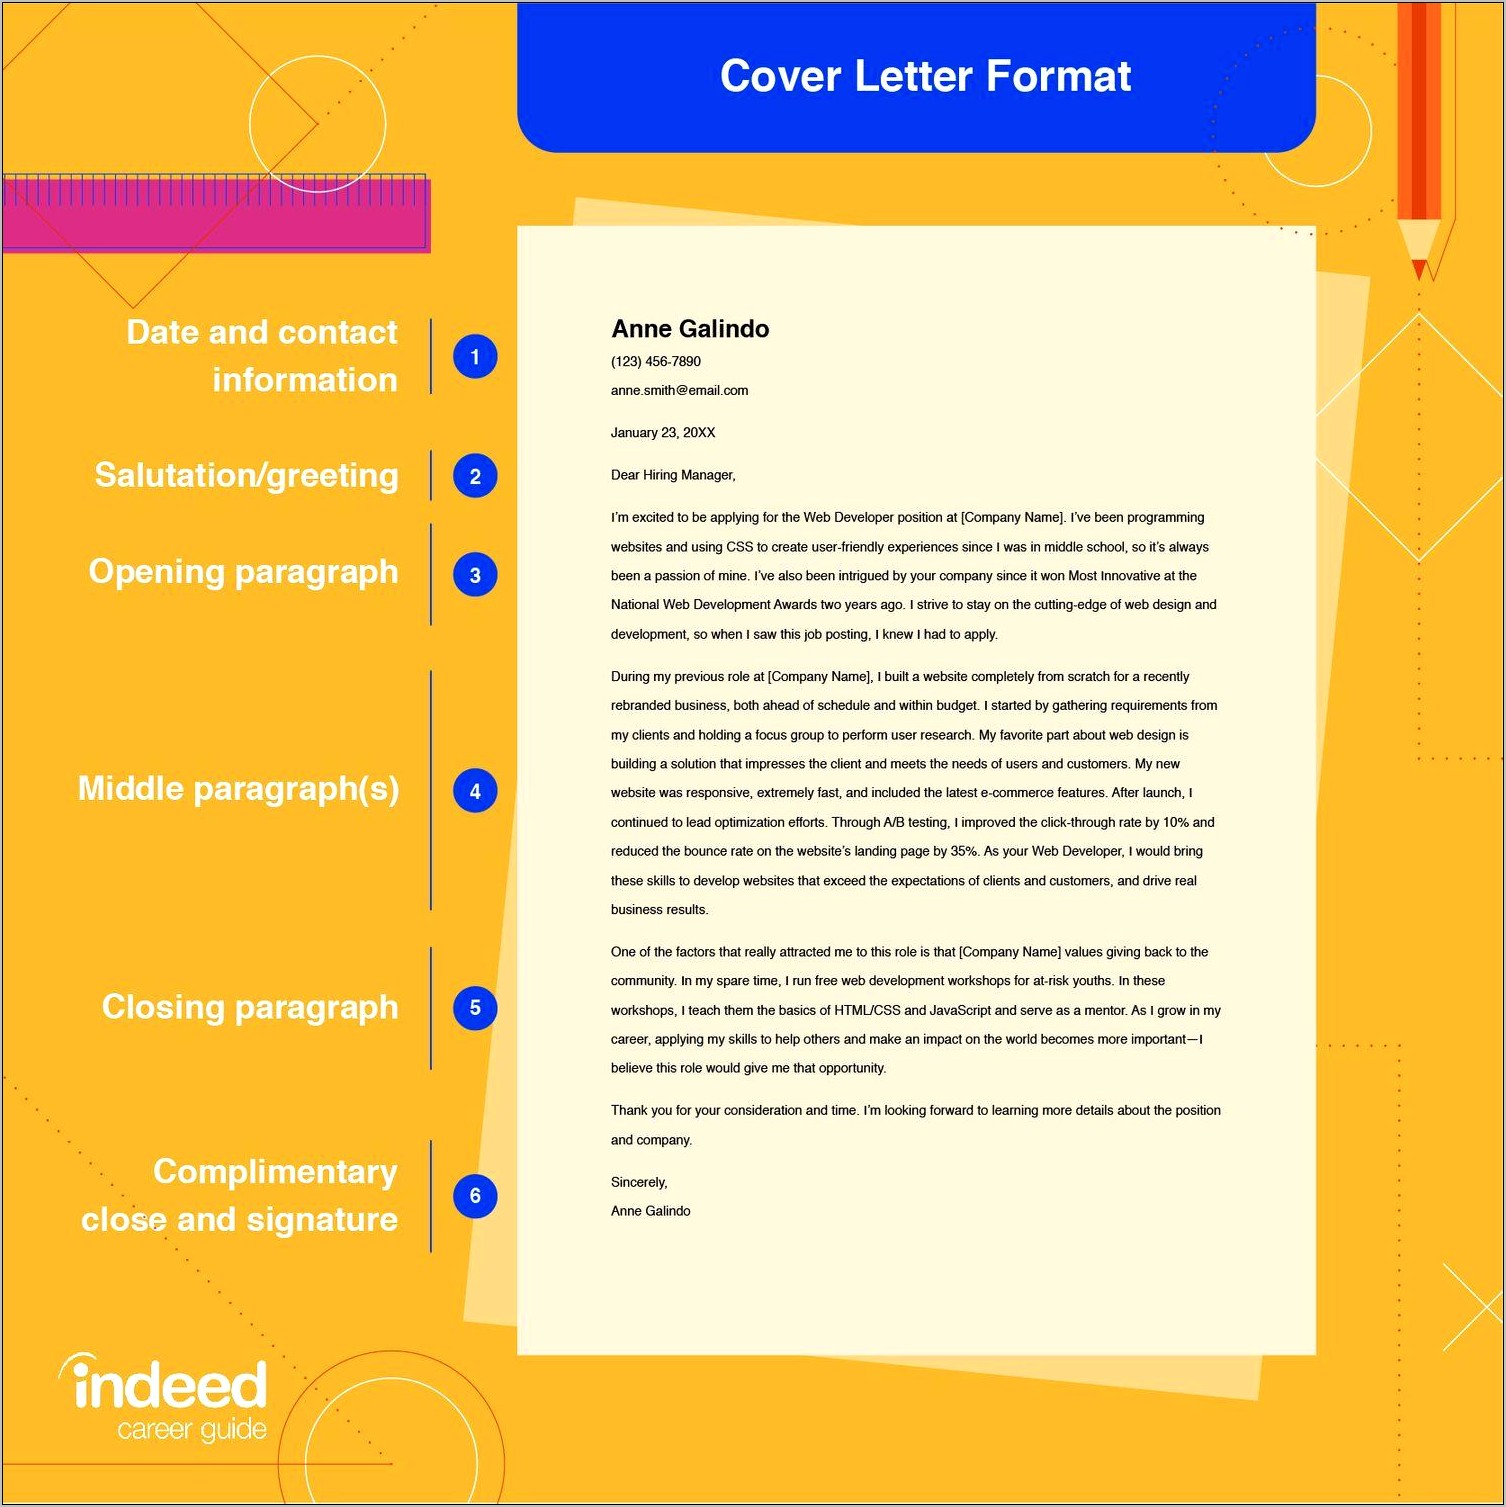 Sample Format Cover Letter Resume